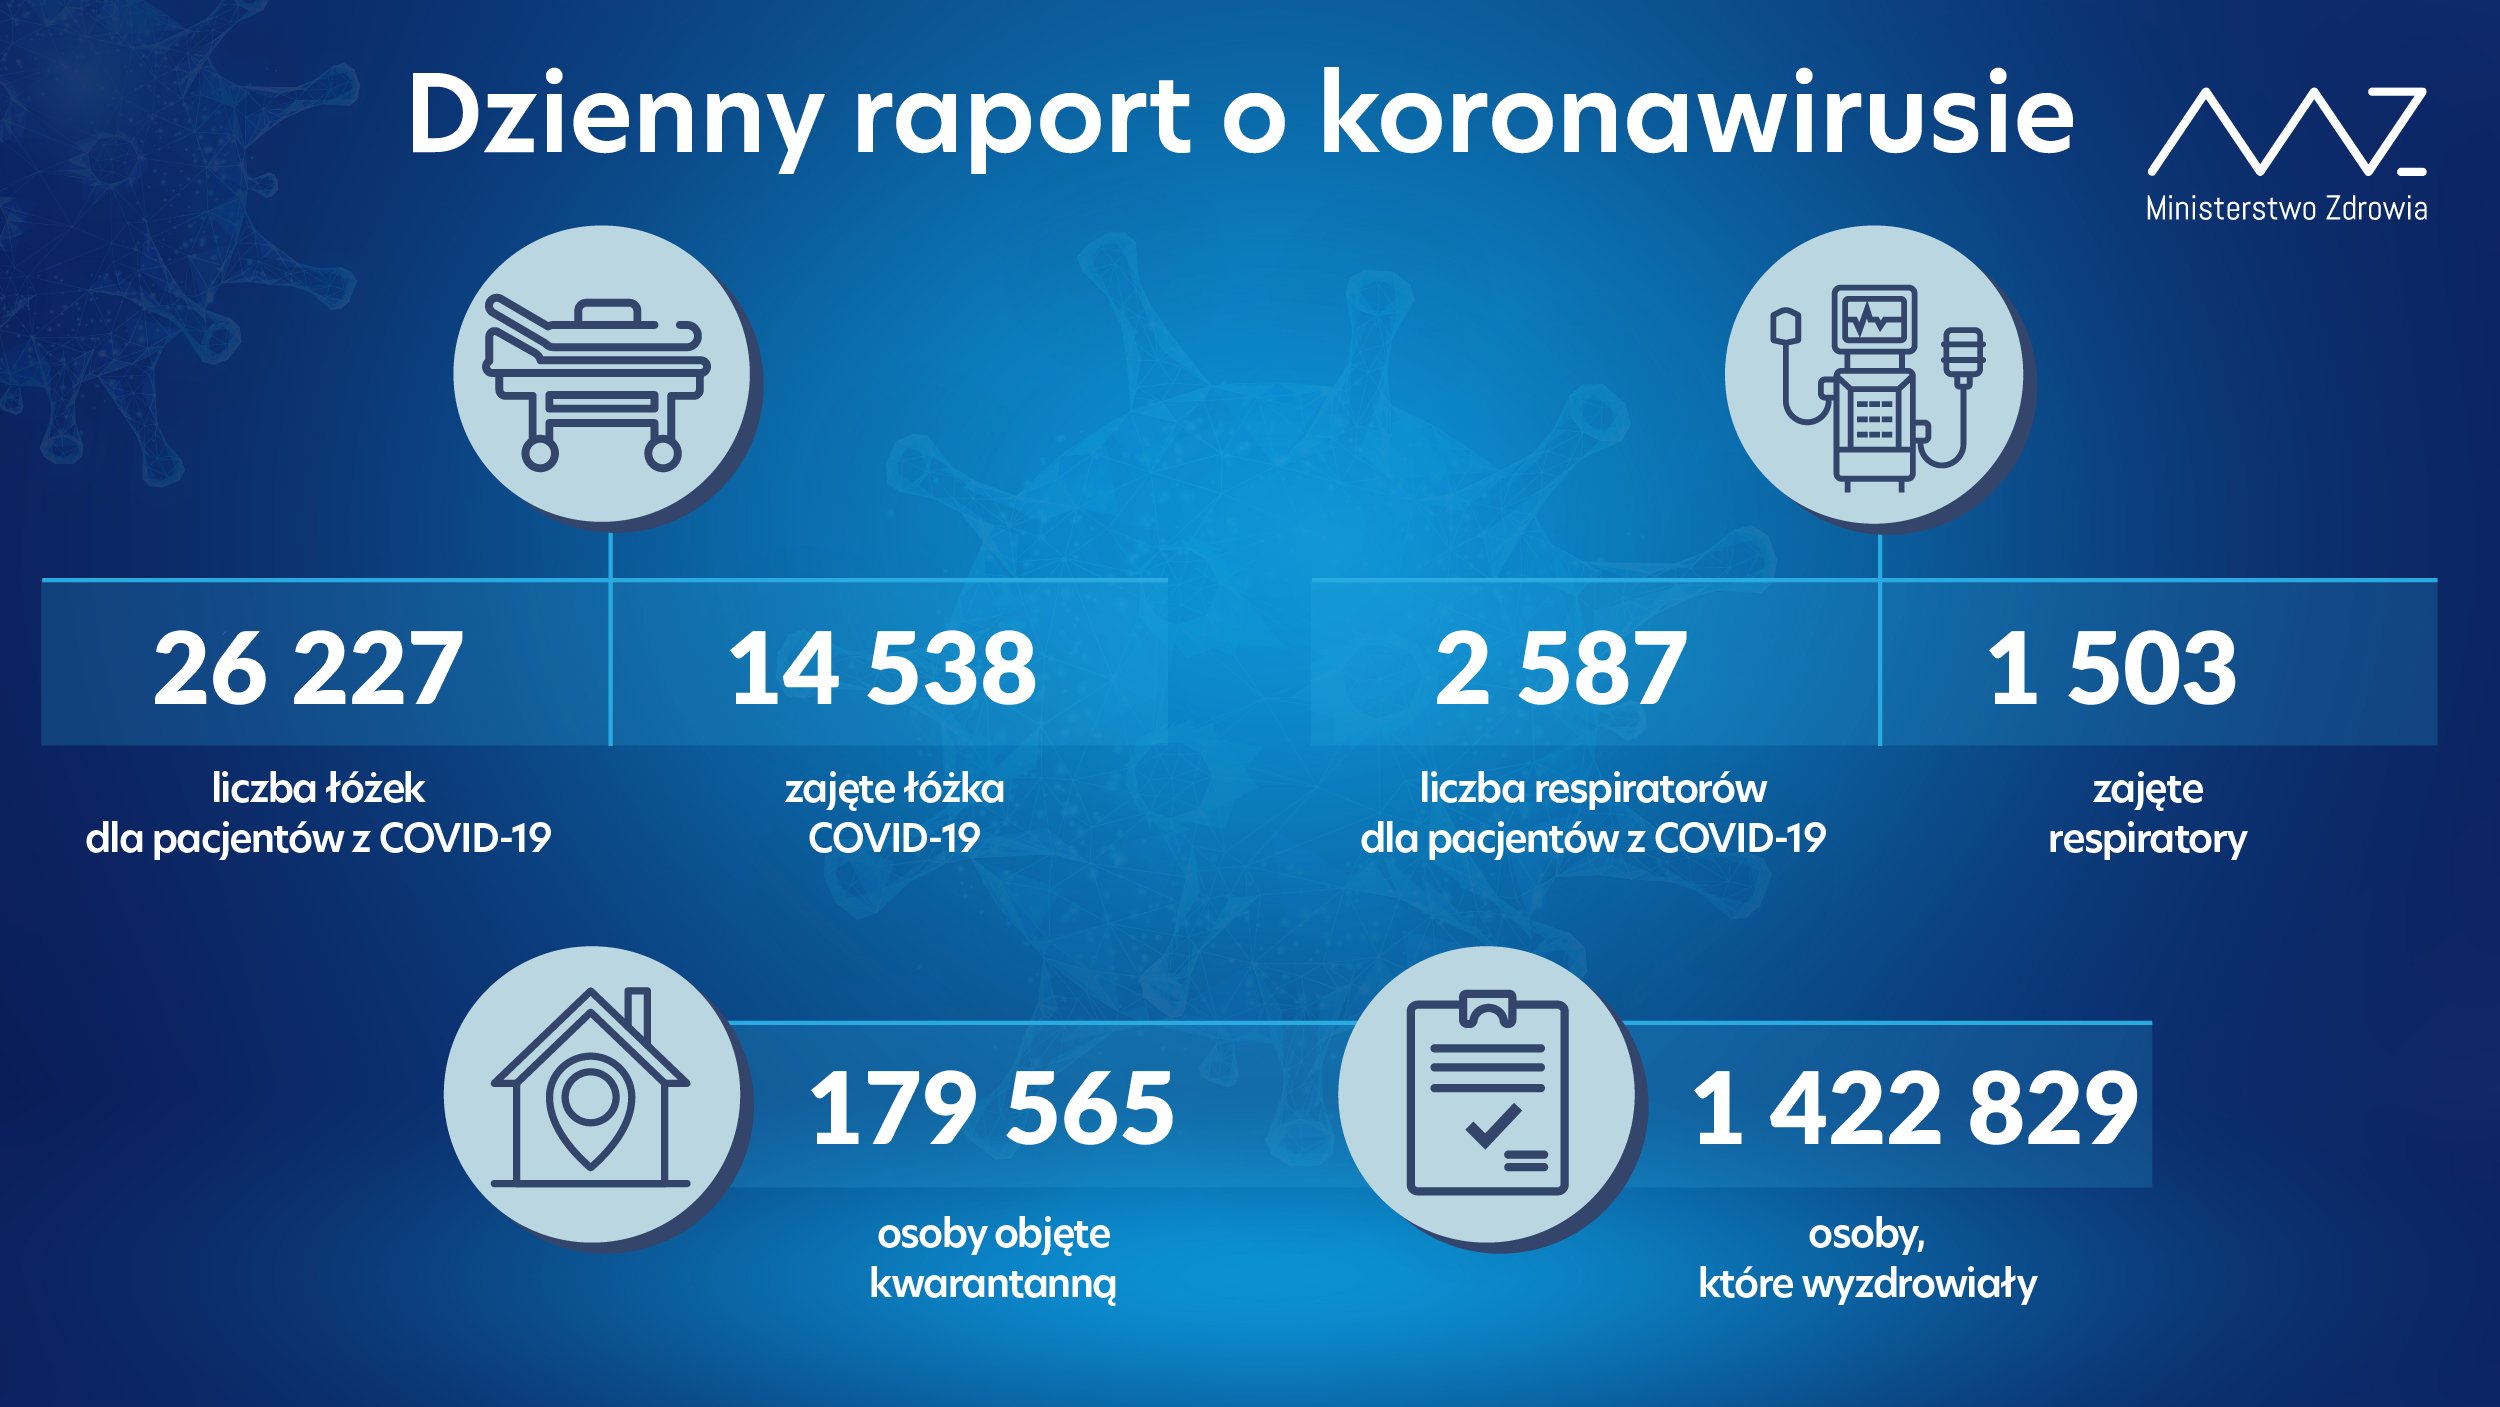 Wzrosła liczba zajętych respiratorów, więcej osób hospitalizowanych z infekcją COVID-19. Nowe dane Ministerstwa Zdrowia